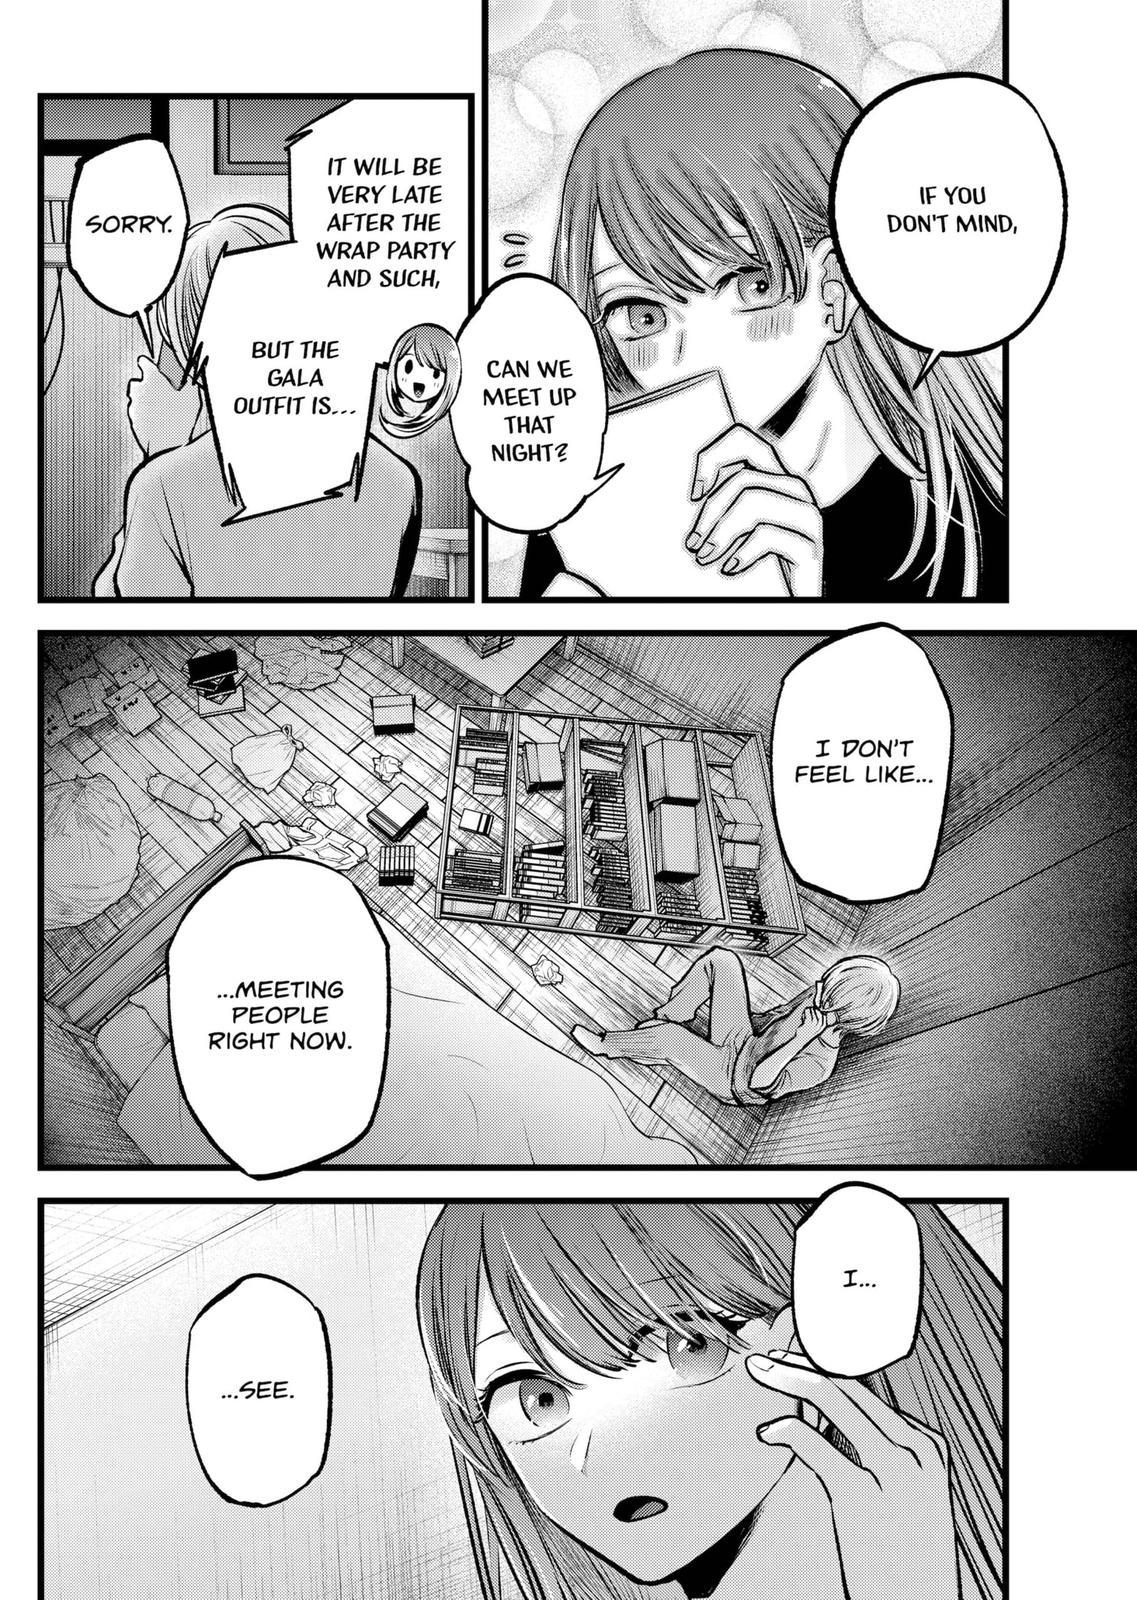 Oshi no Ko, Chapter 114 - Oshi no Ko Manga Online